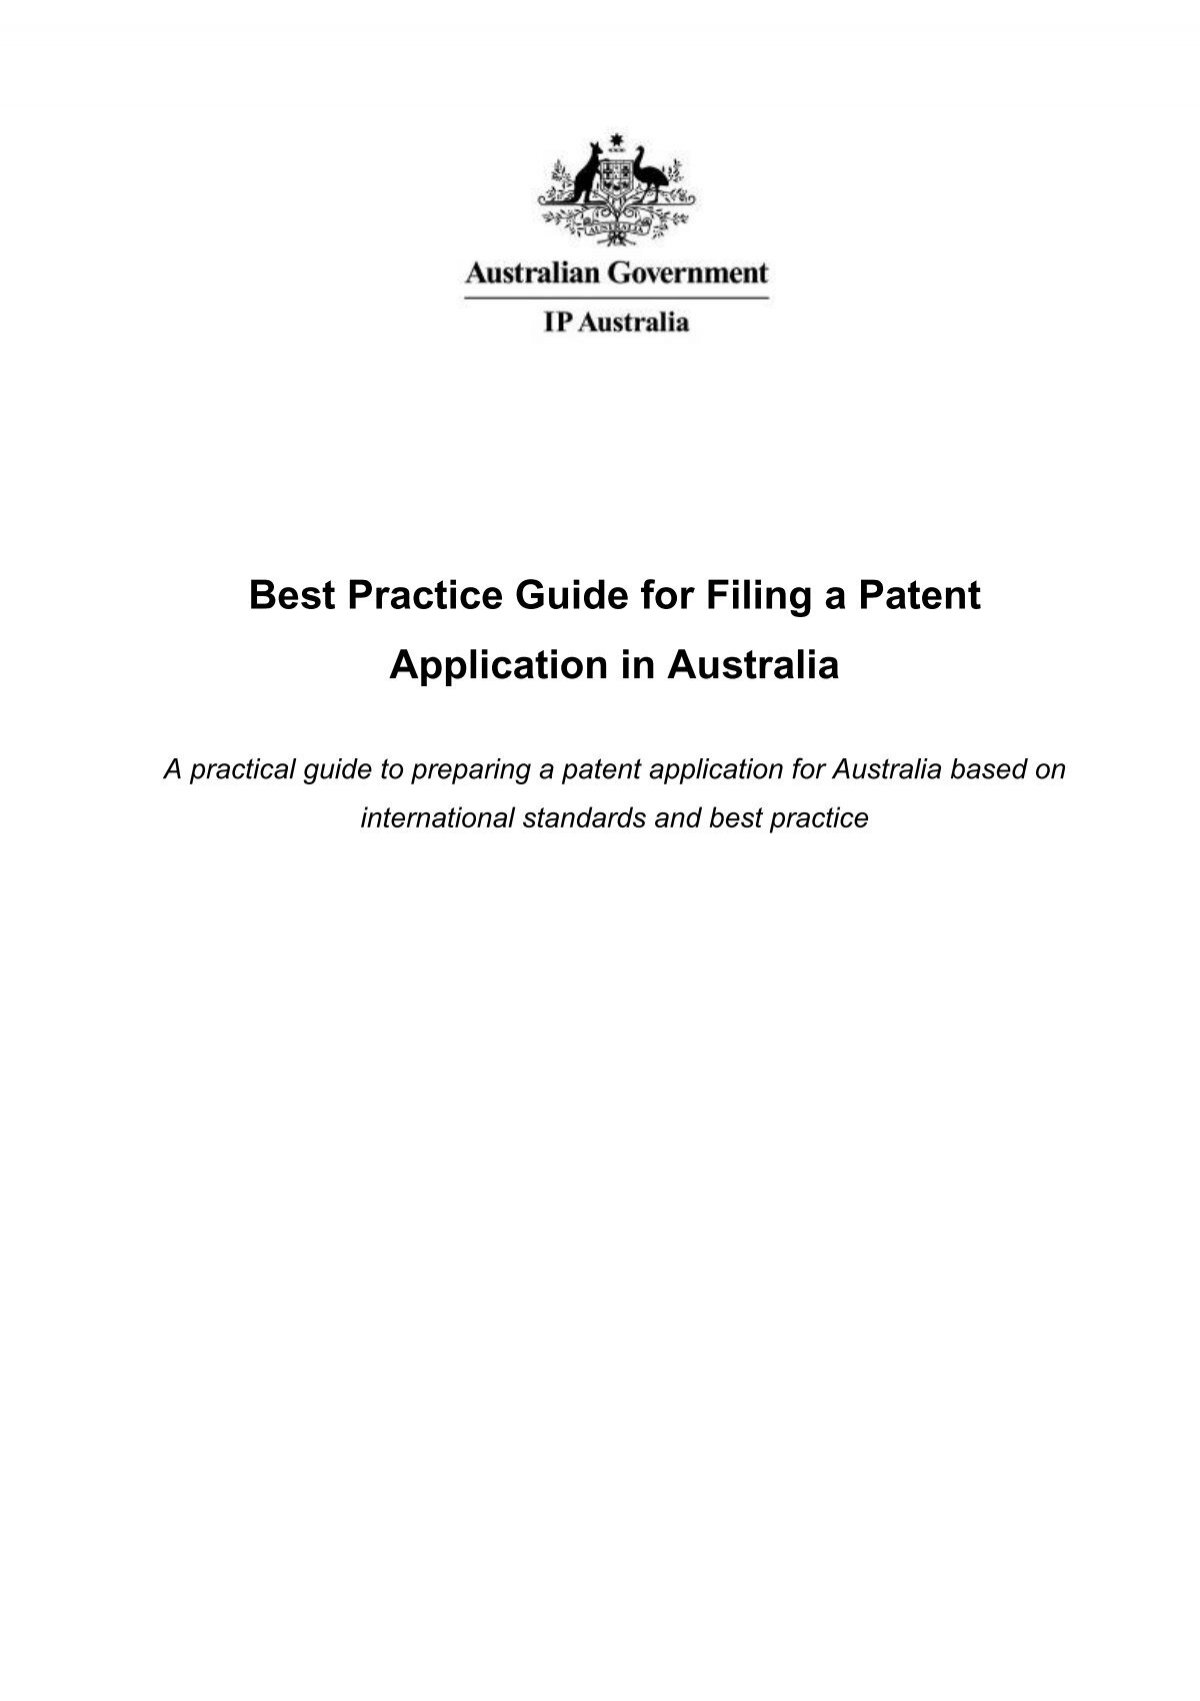 patent assignment ip australia